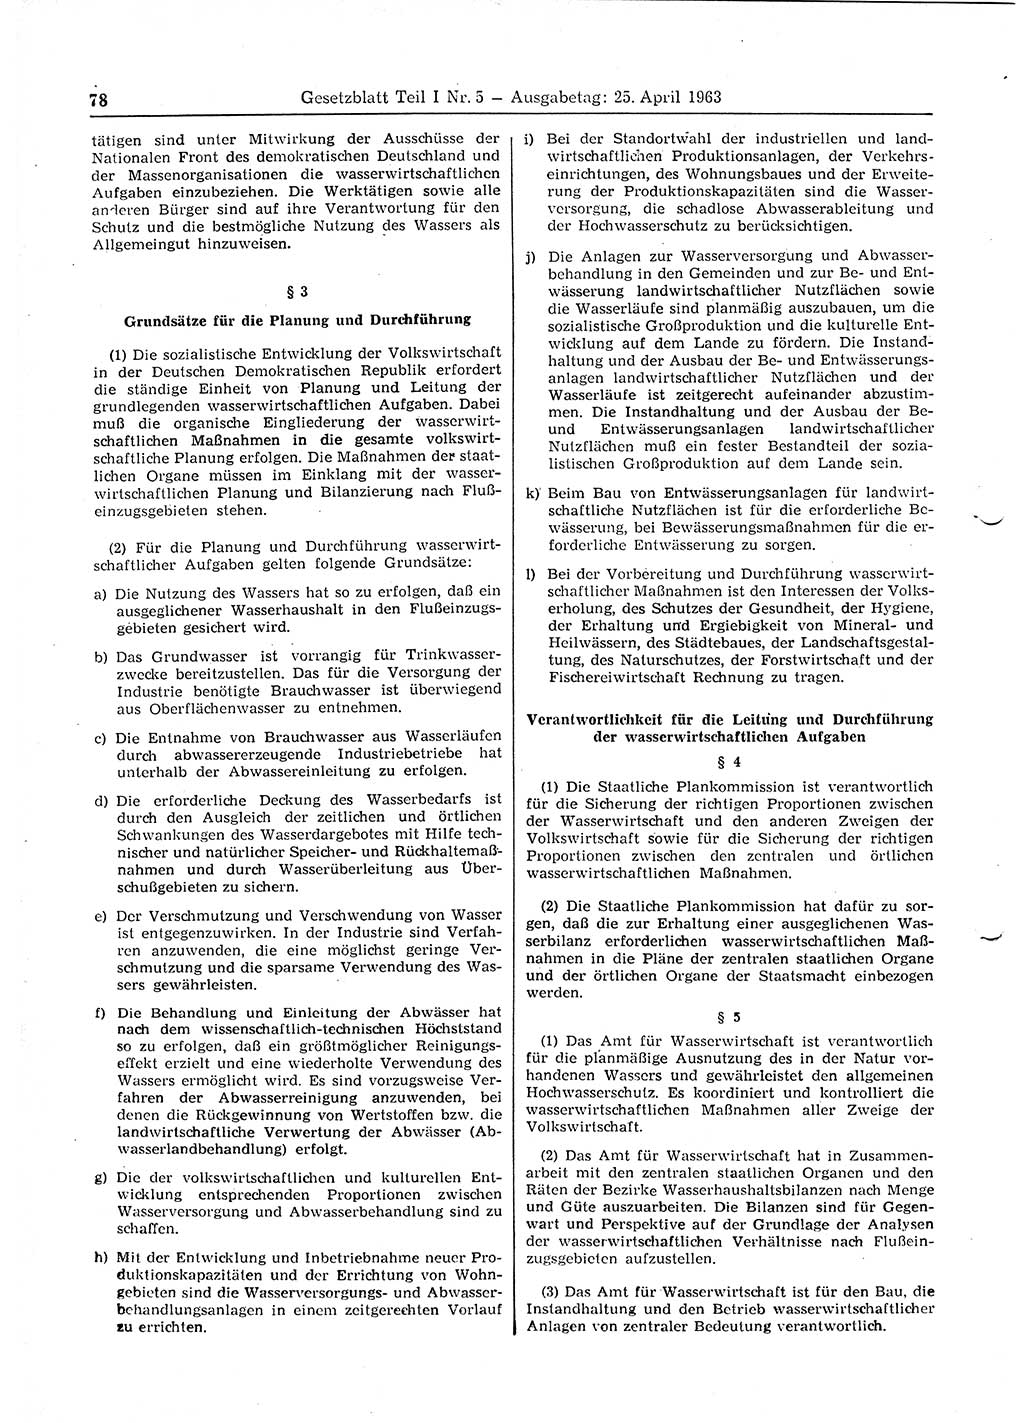 Gesetzblatt (GBl.) der Deutschen Demokratischen Republik (DDR) Teil Ⅰ 1963, Seite 78 (GBl. DDR Ⅰ 1963, S. 78)